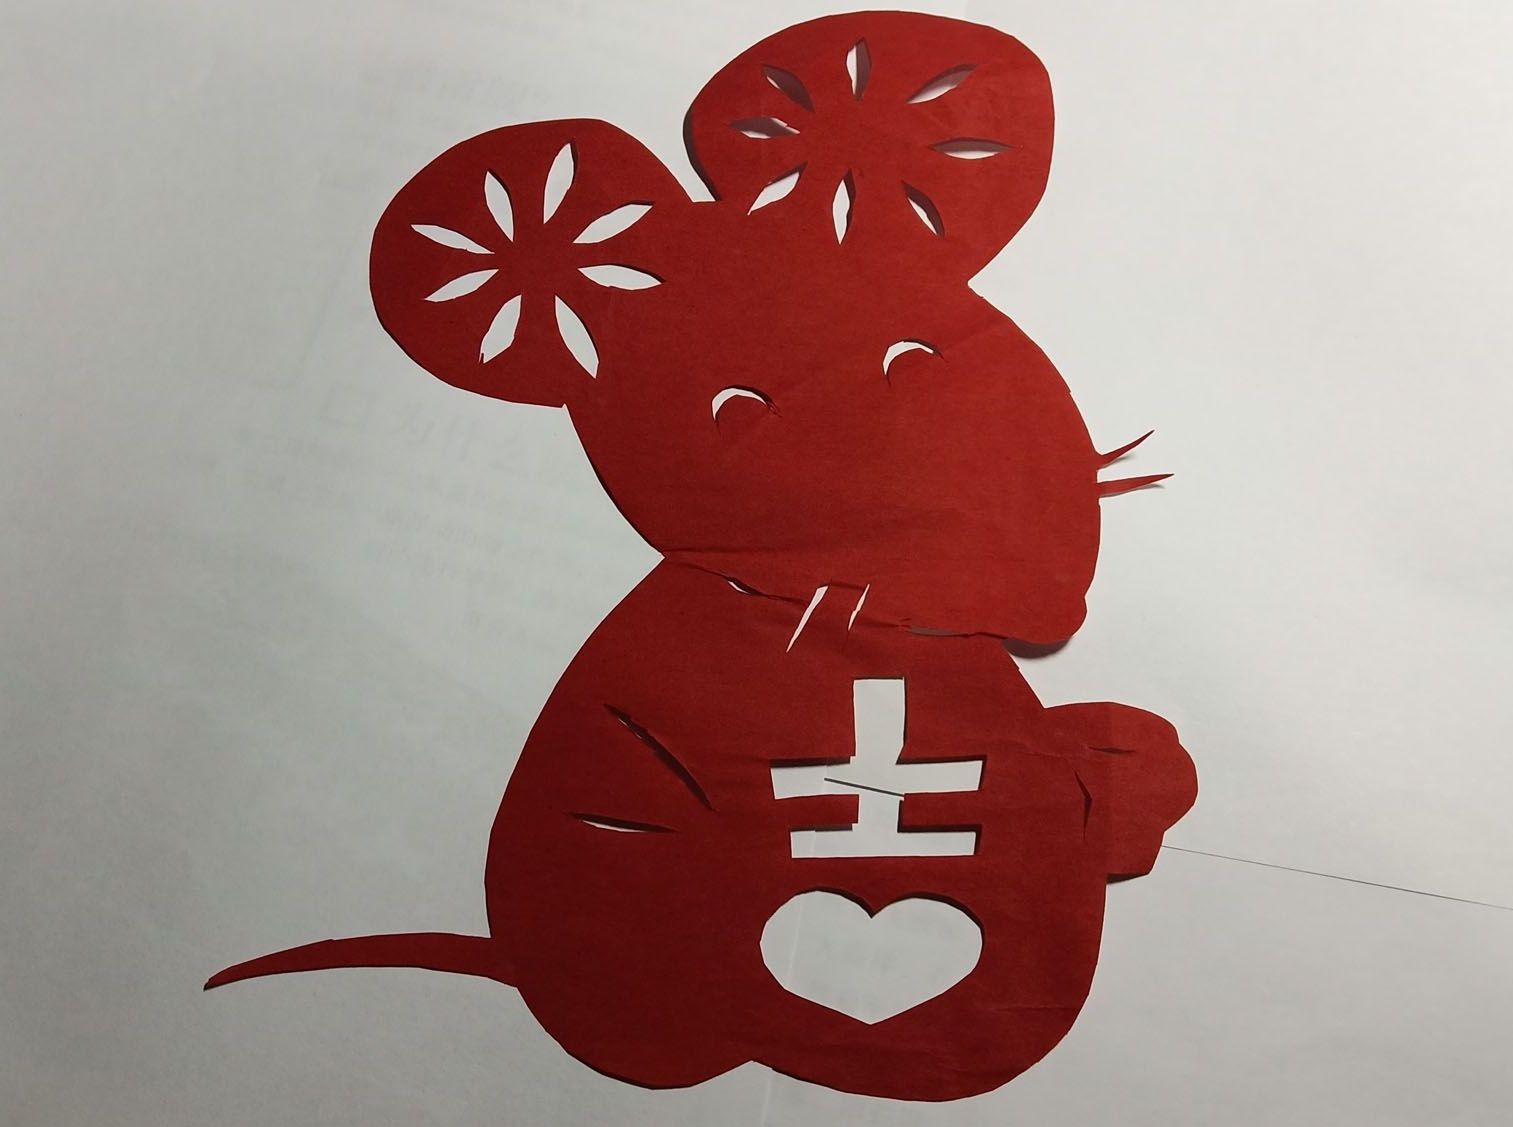 好长时间没有更新剪纸版块了耶，走一个：
恭祝您：新的一年里有：
“鼠”不尽的快乐！
“鼠”不尽的笑容！
“鼠”不尽的钞票！
“鼠”不尽的幸福！
“鼠”不尽的收获！
愿所有的好运都“鼠”于我们！@予心木子
http://www.lexue.asia/